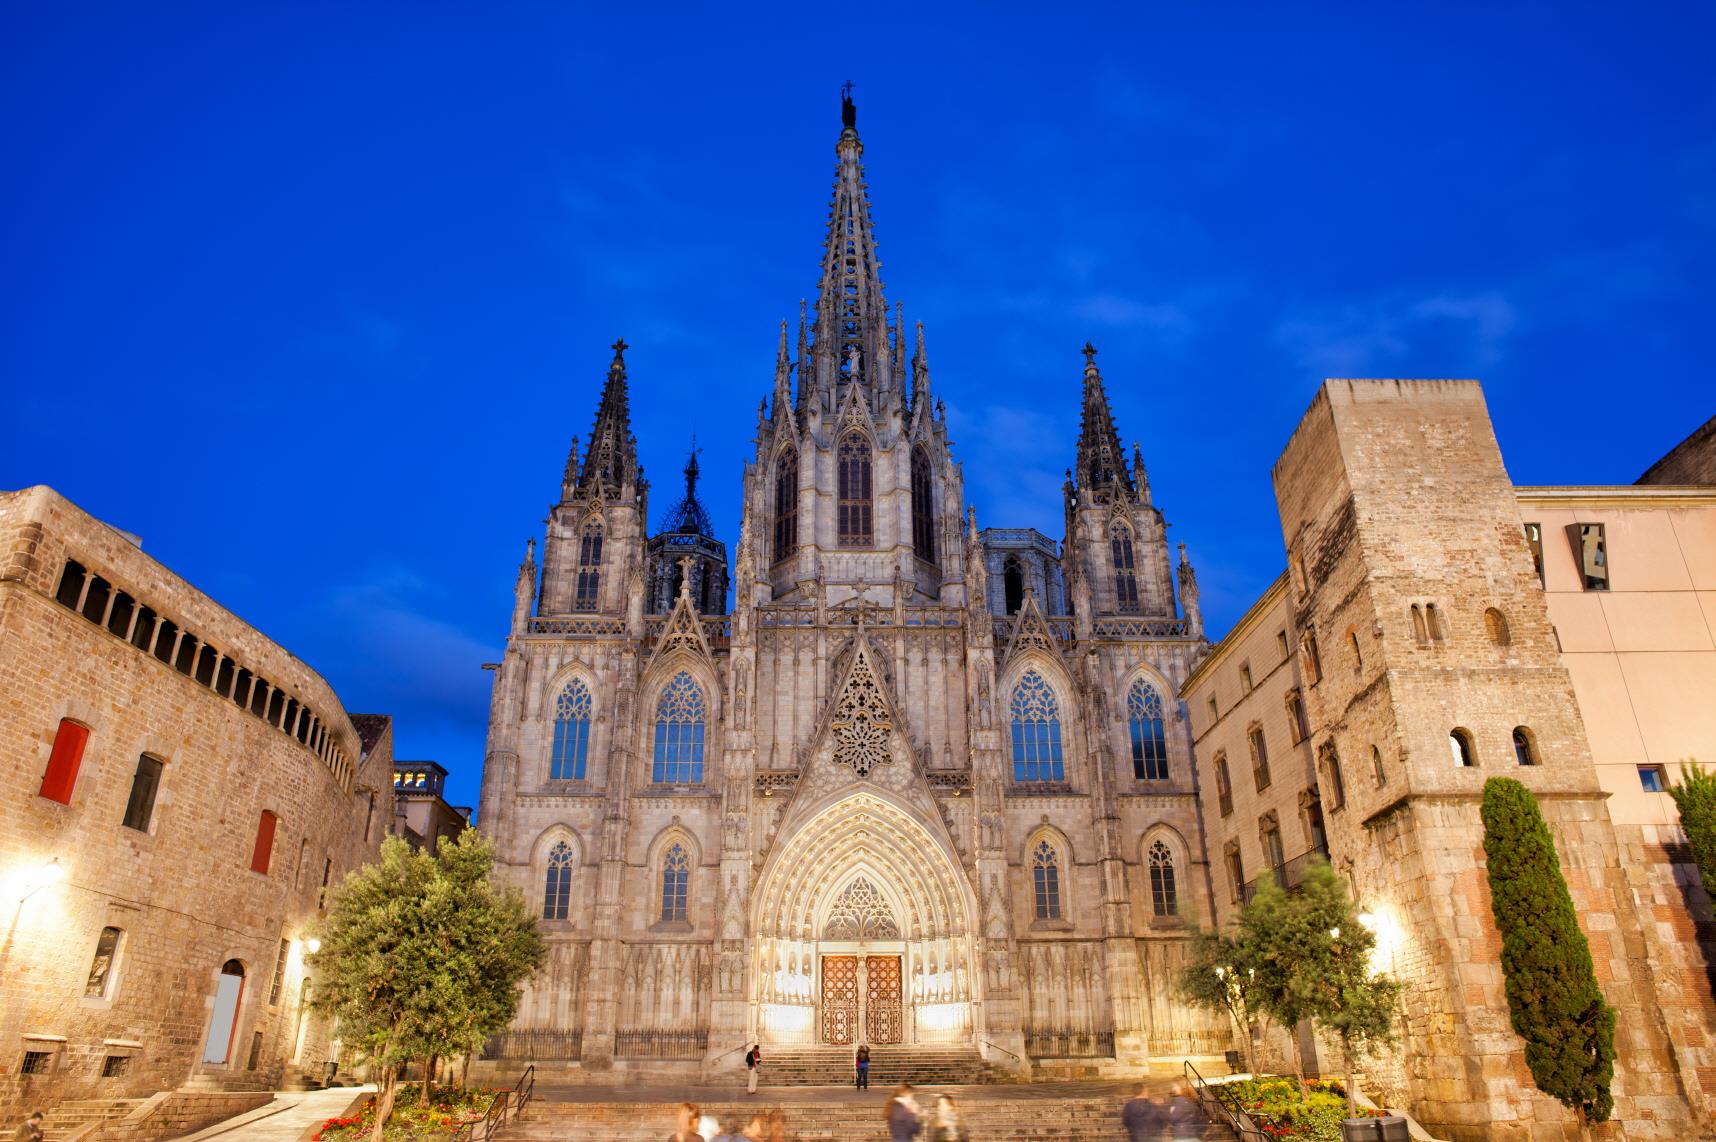 바르셀로나 대성당 (Cathedral of Barcelona)